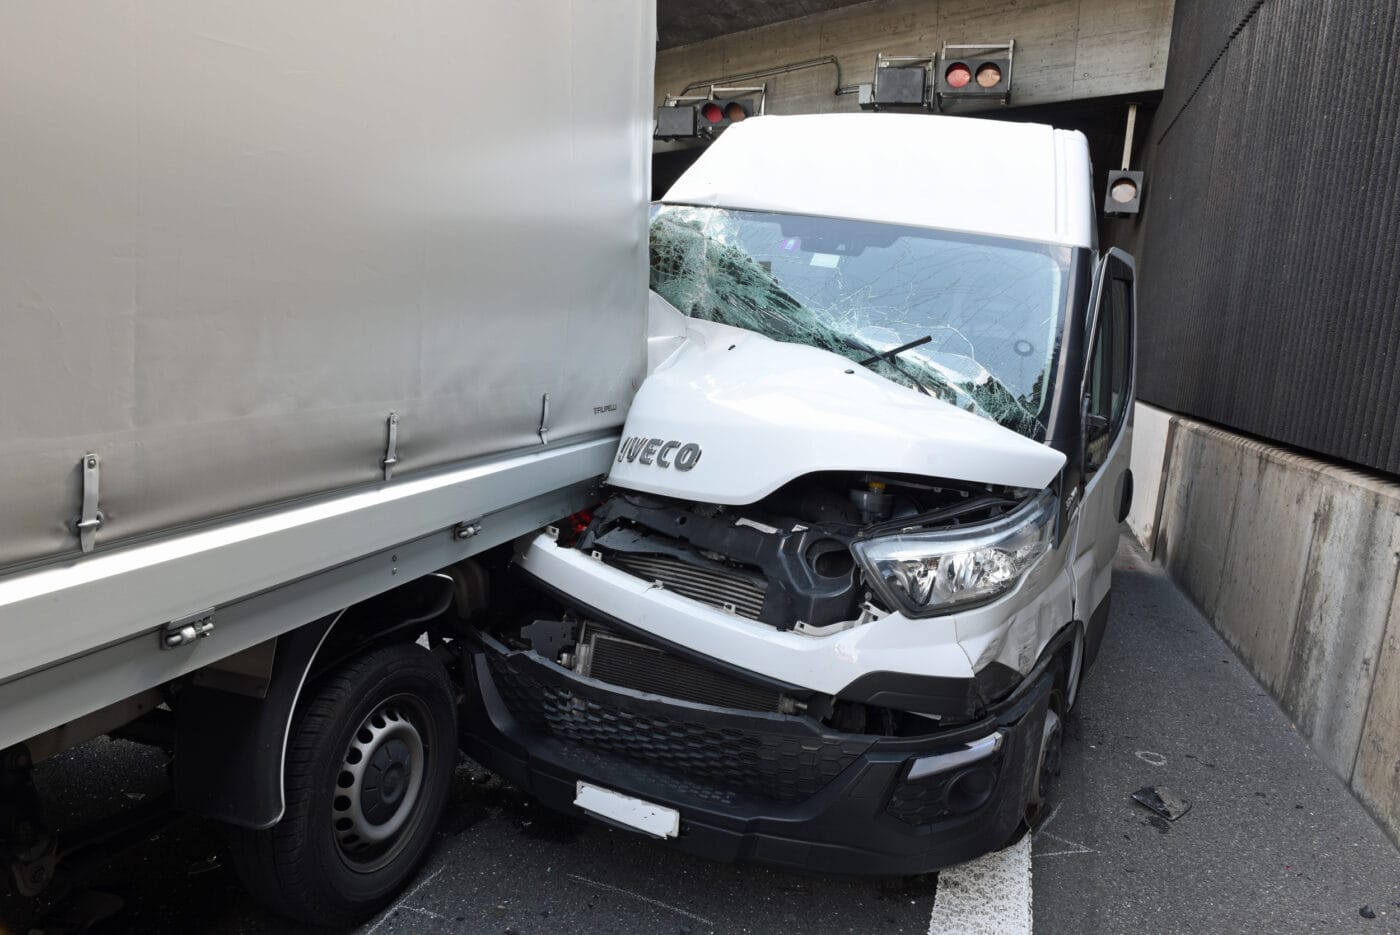 Kollision auf der Autobahn – drei verletzte Personen